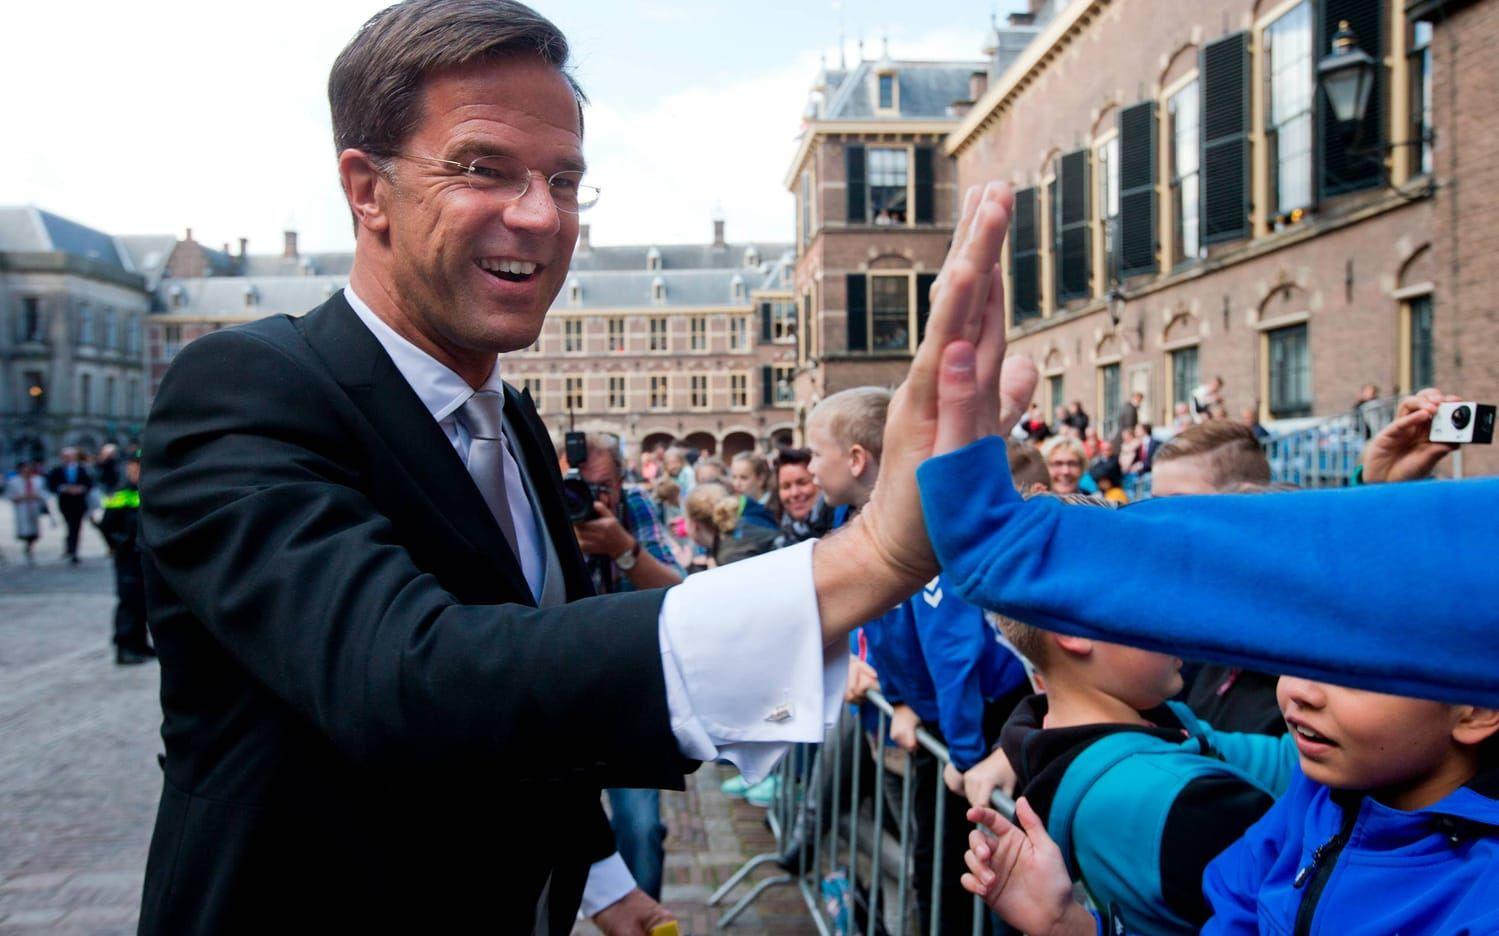 Mark Rutte har varit premiärminister i Nederländerna sedan 2010 och bildade i oktober ny regering i landet. Landets regering består av fyra partier och Mark Rutte representerar liberala Folkpartiet för frihet och demokrati. Bild: AP Photo/Peter Dejong